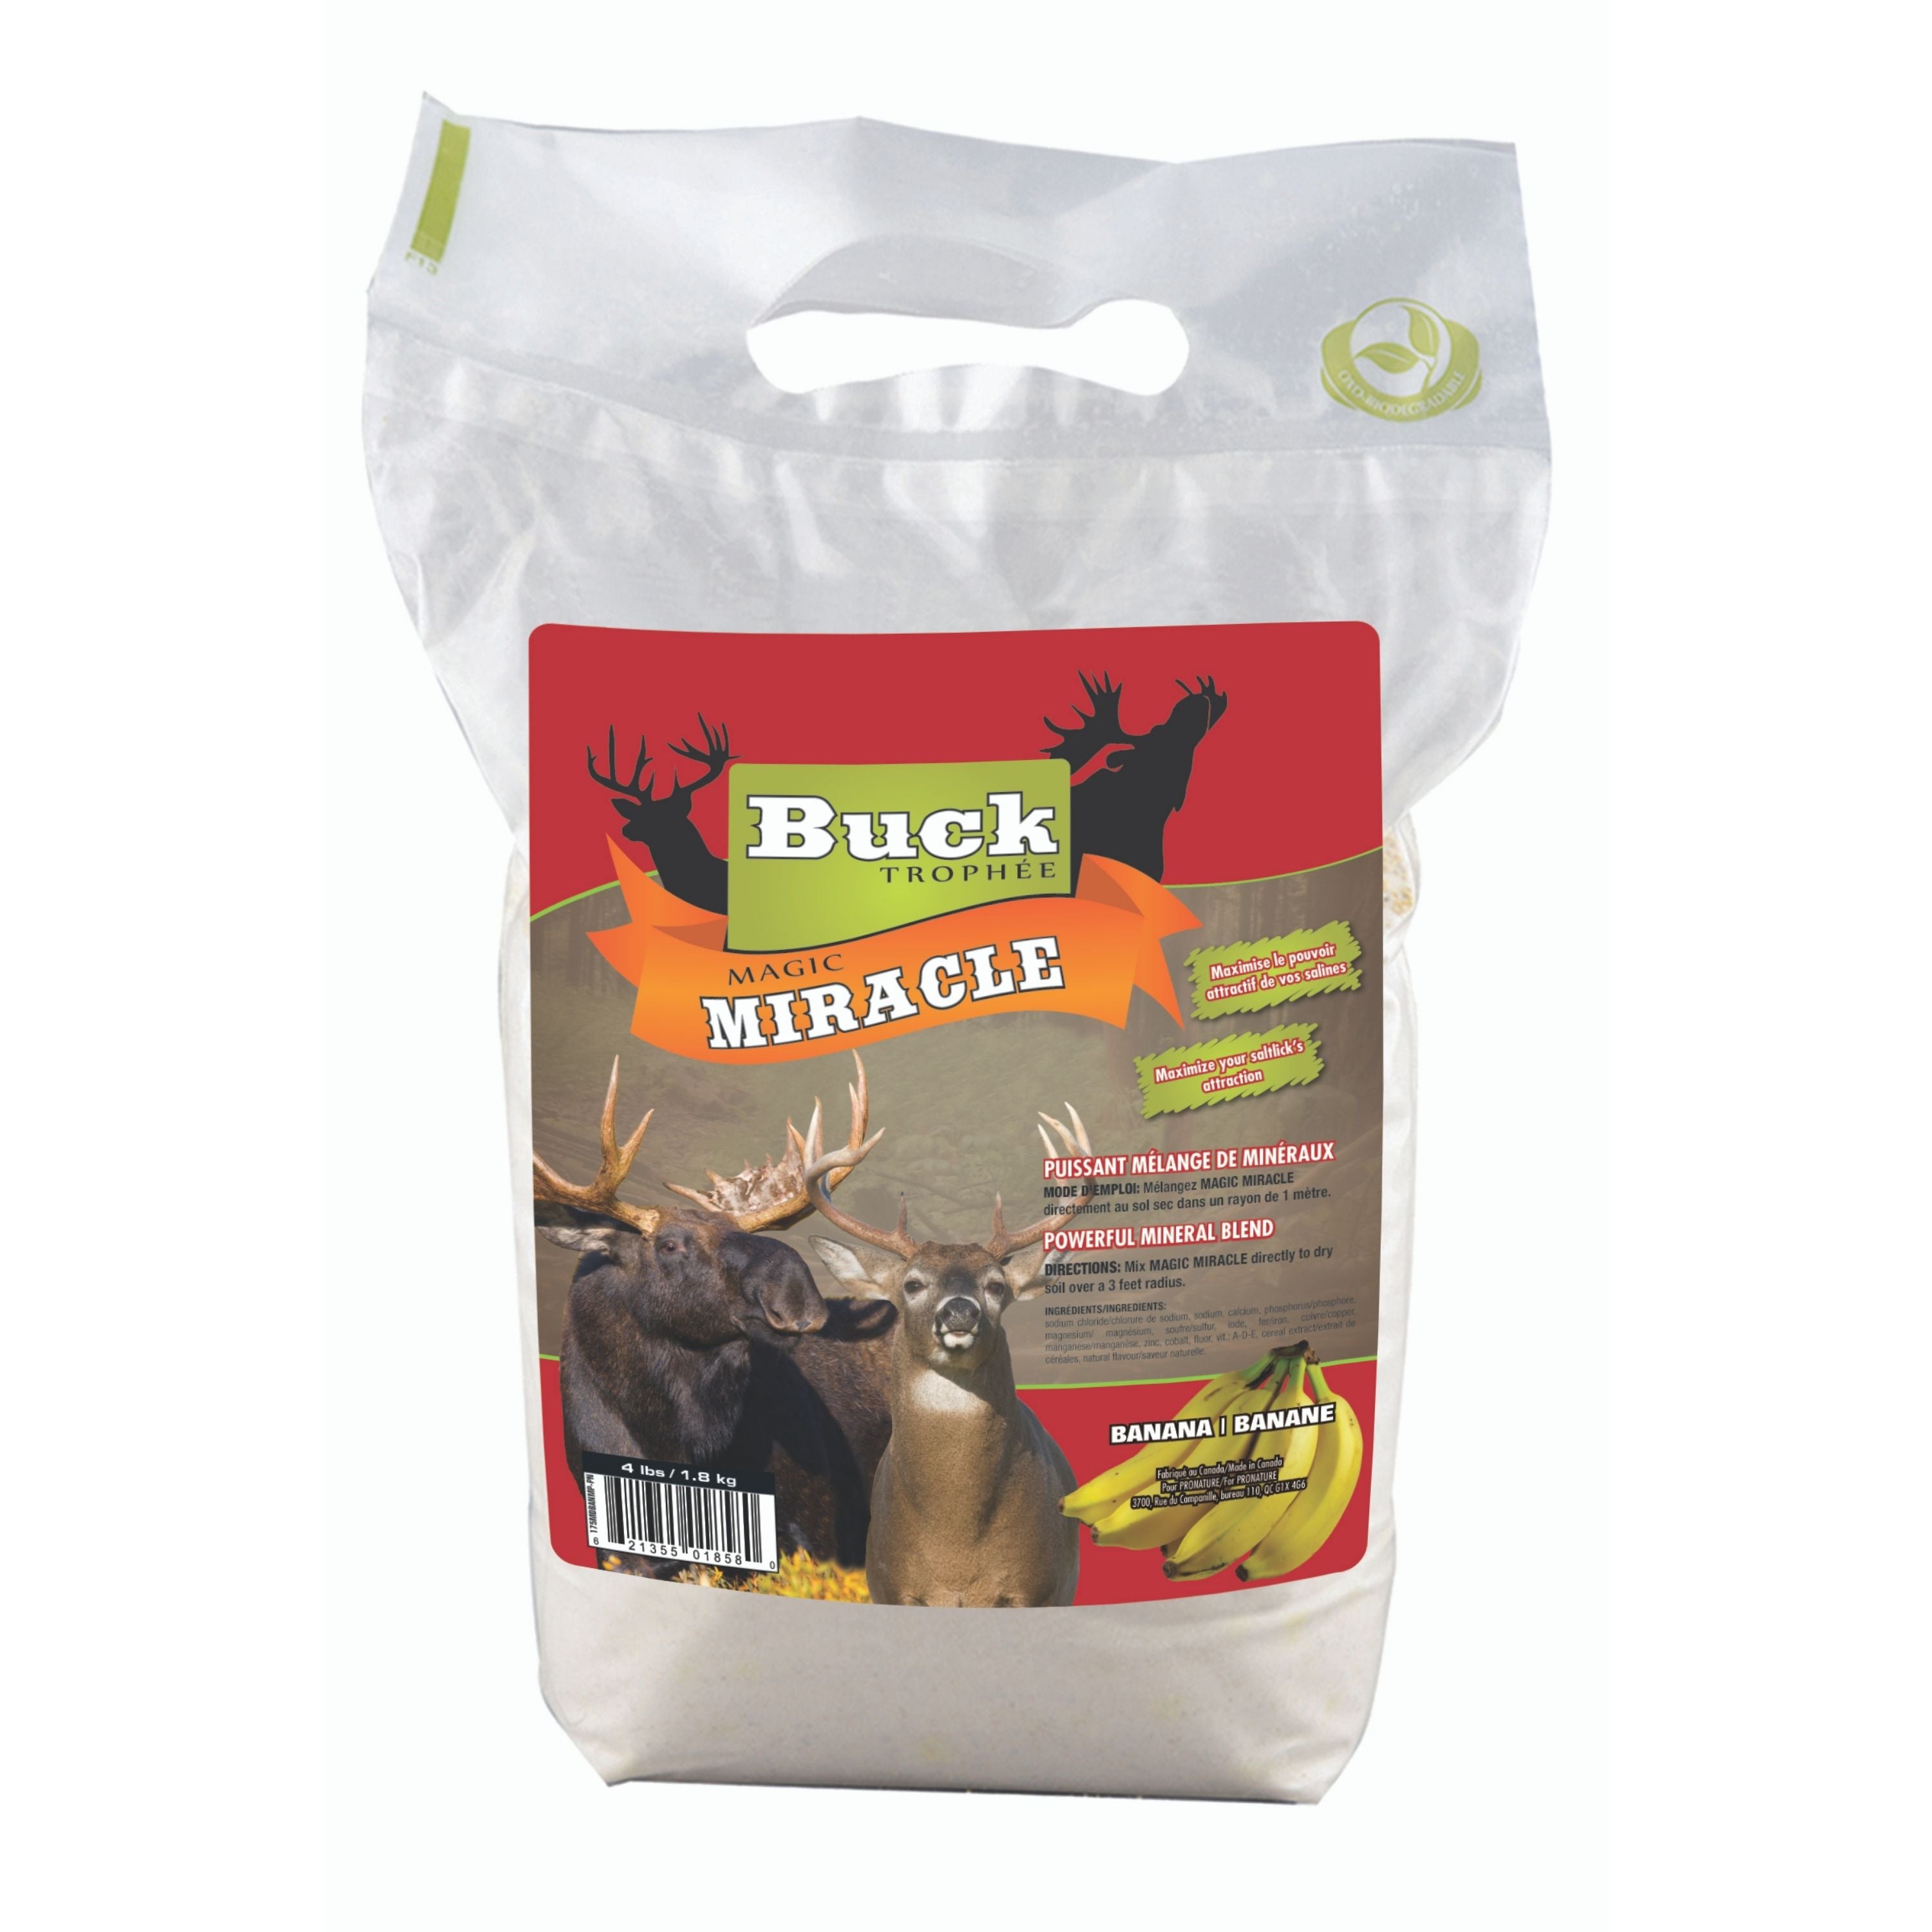 Poudre volatile ”Magic Miracle” à saveur de banane pour orignal - 1.8kg